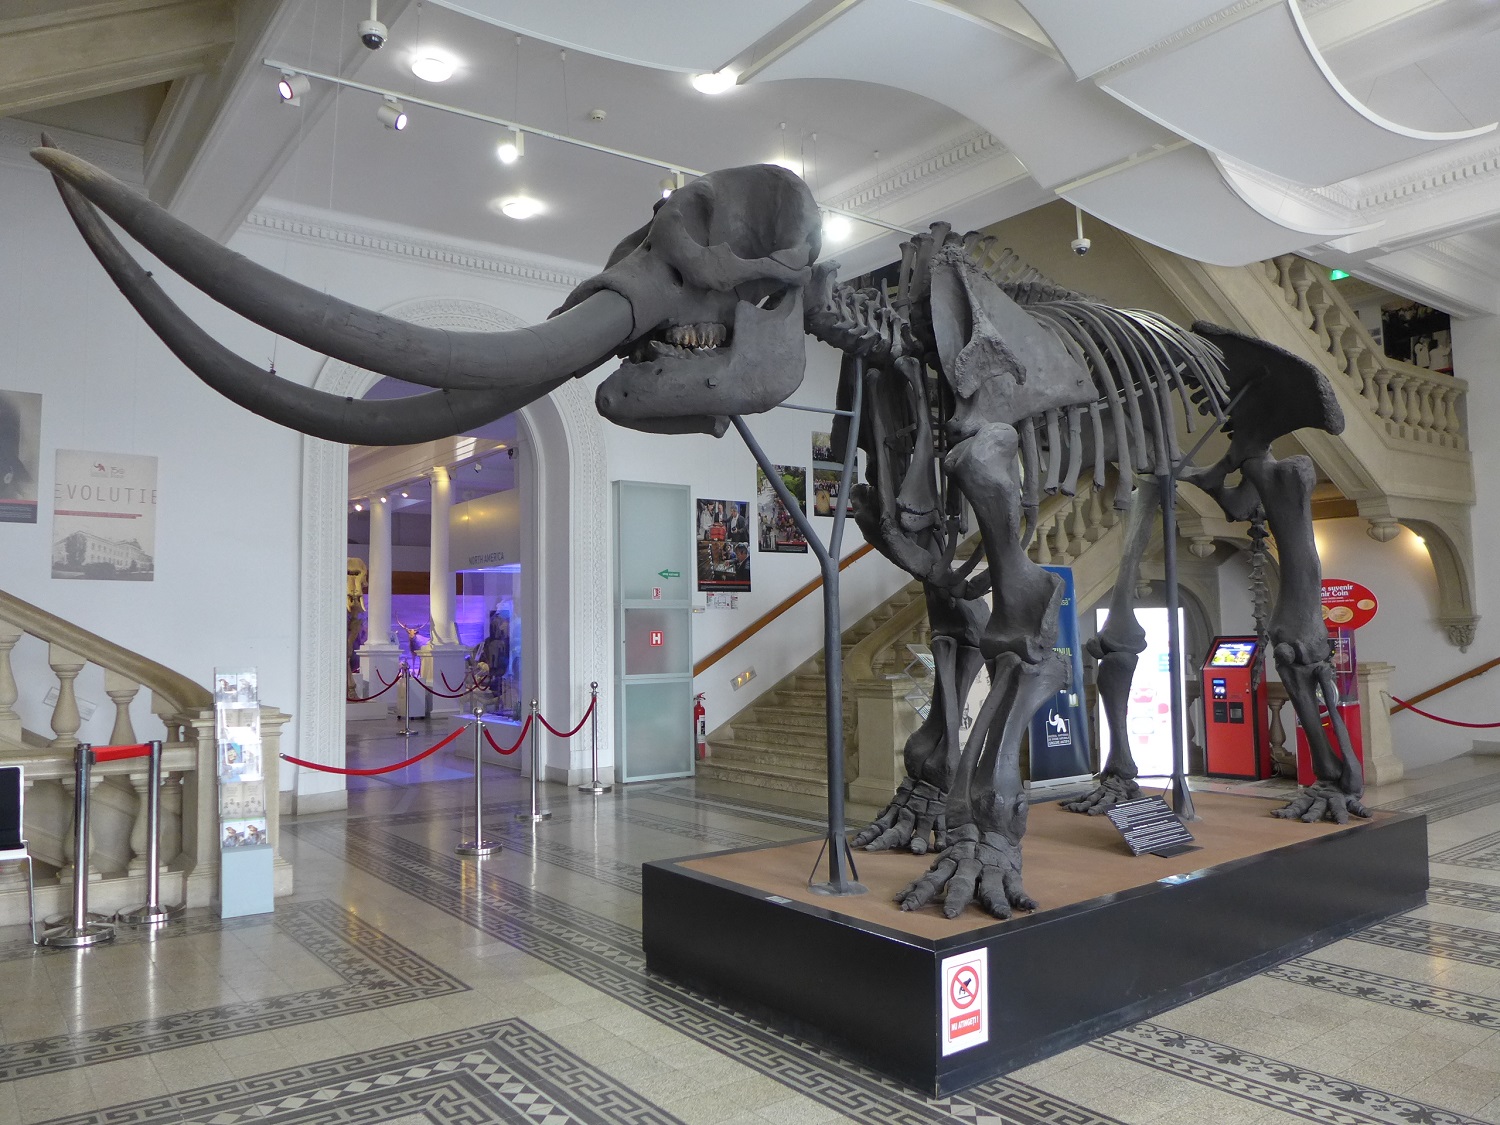 Dans le hall d’entrée, un squelette de mastodonte américain accueille les visiteurs. Cet animal a disparu il y a 6 ou 7000 ans.